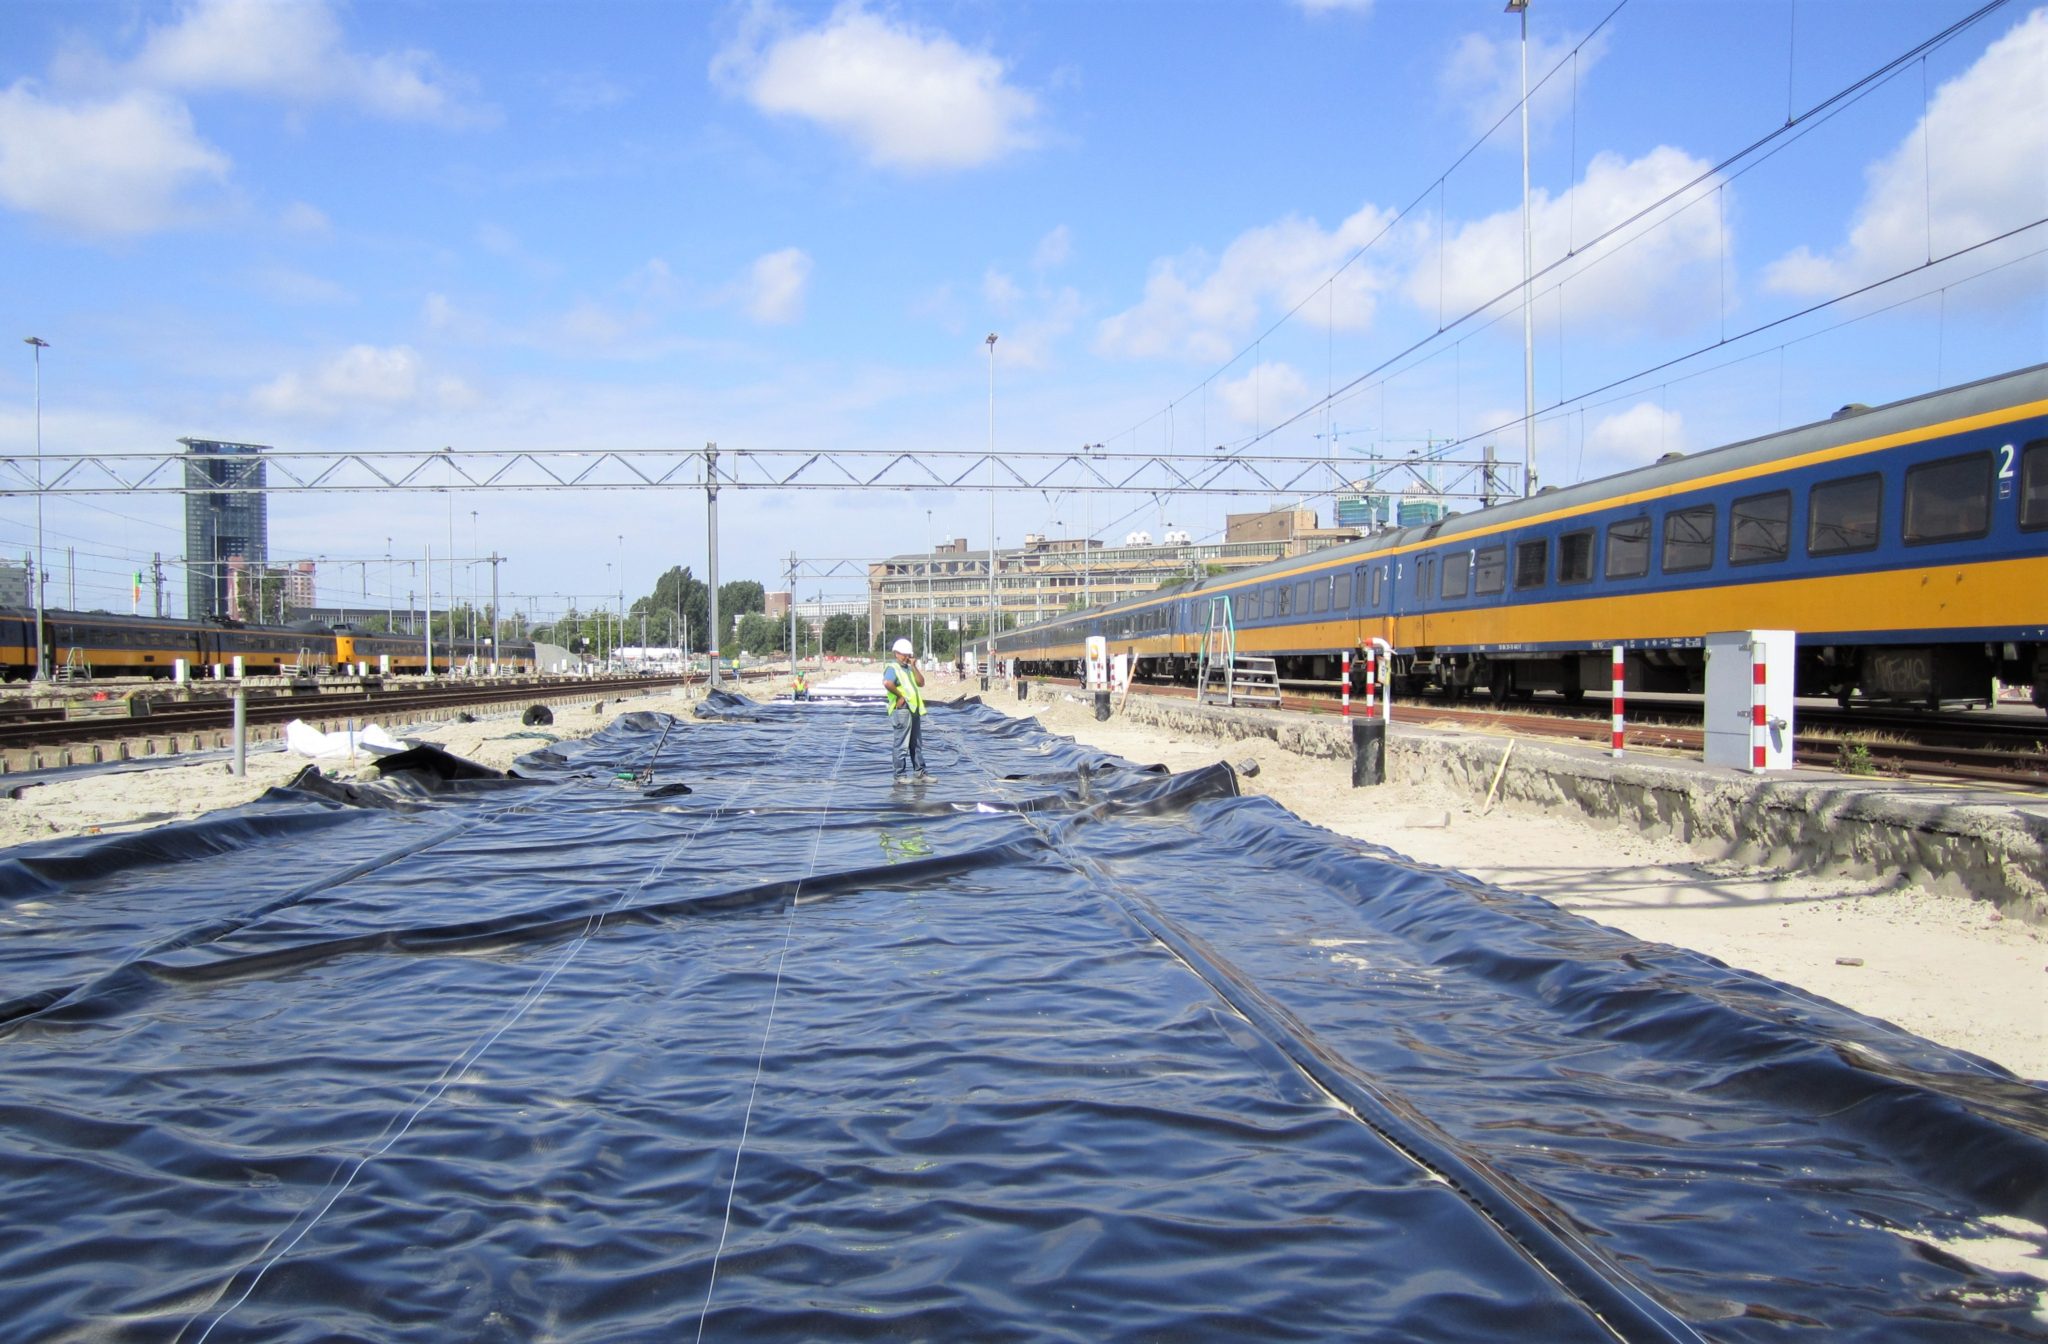 LDPE sous une voie ferrée, La Haye